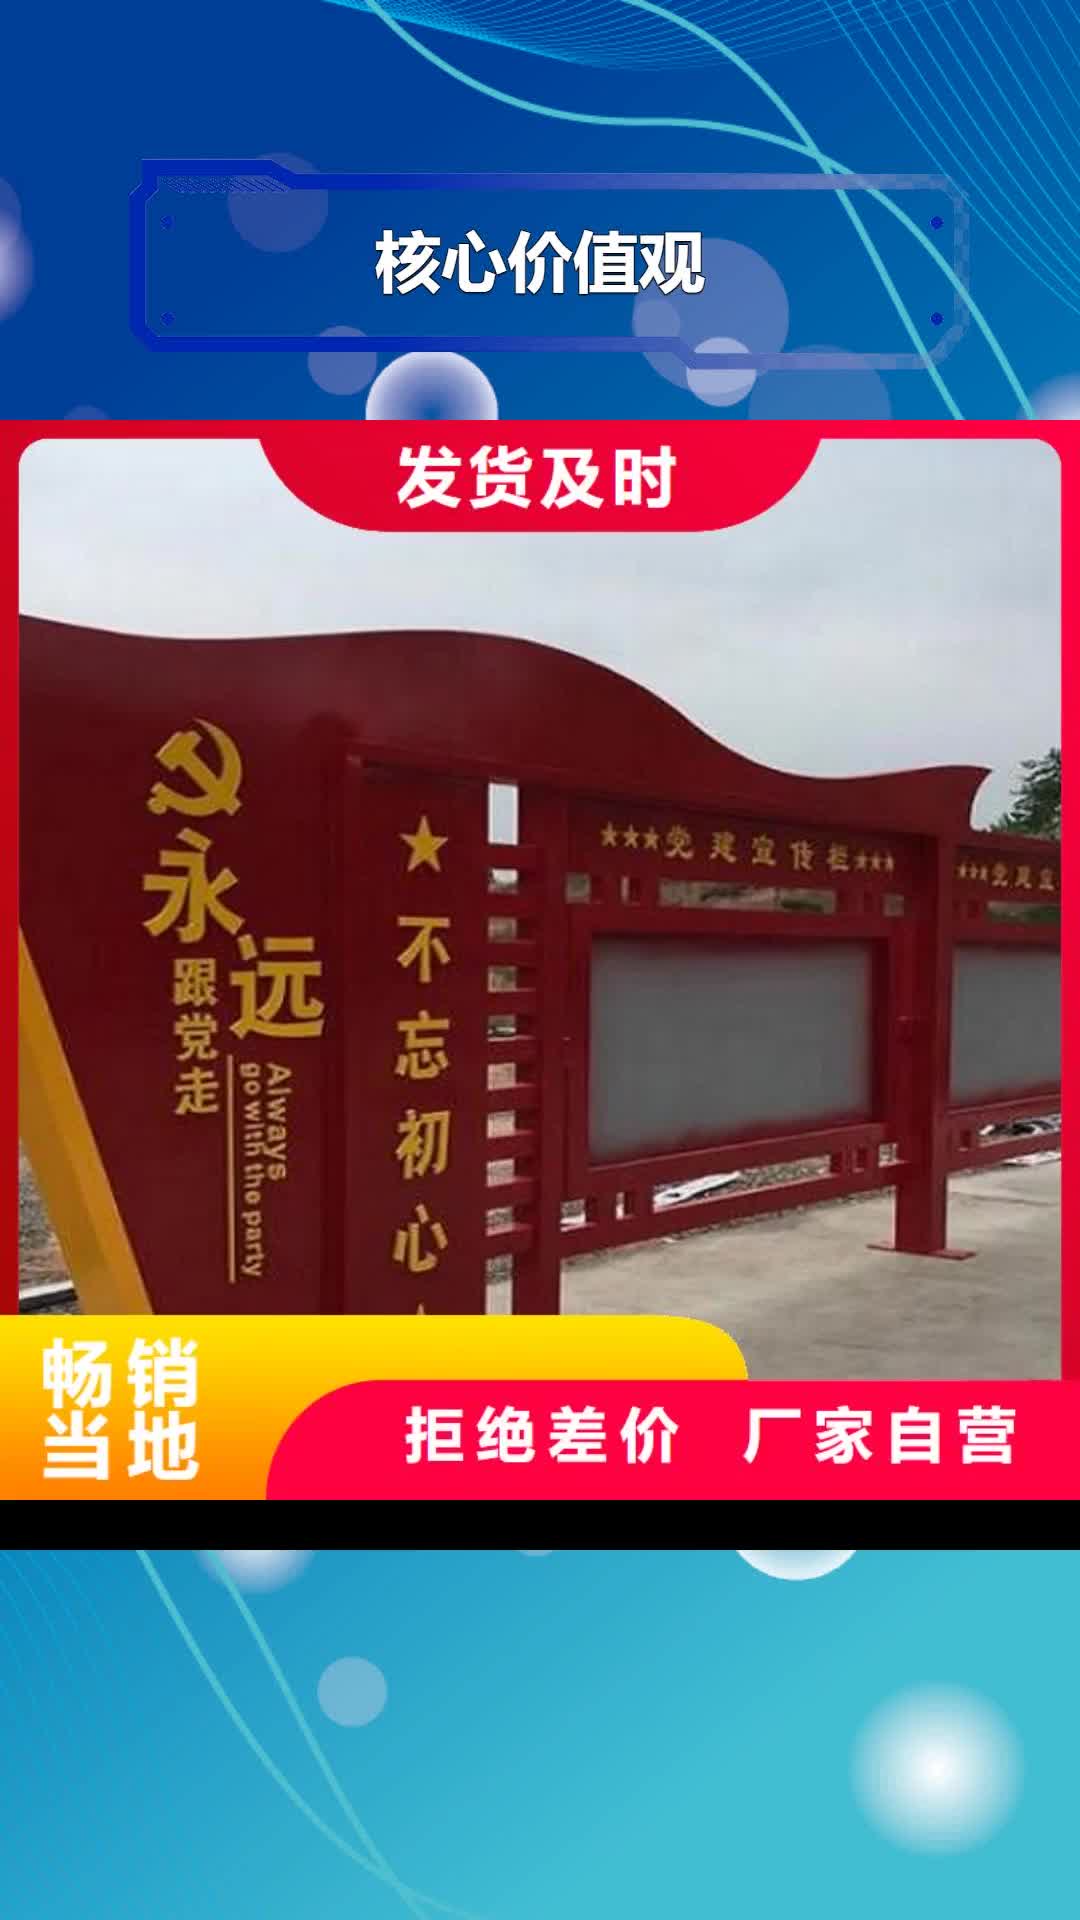 台湾【核心价值观】社区阅报栏灯箱生产厂家品质信得过